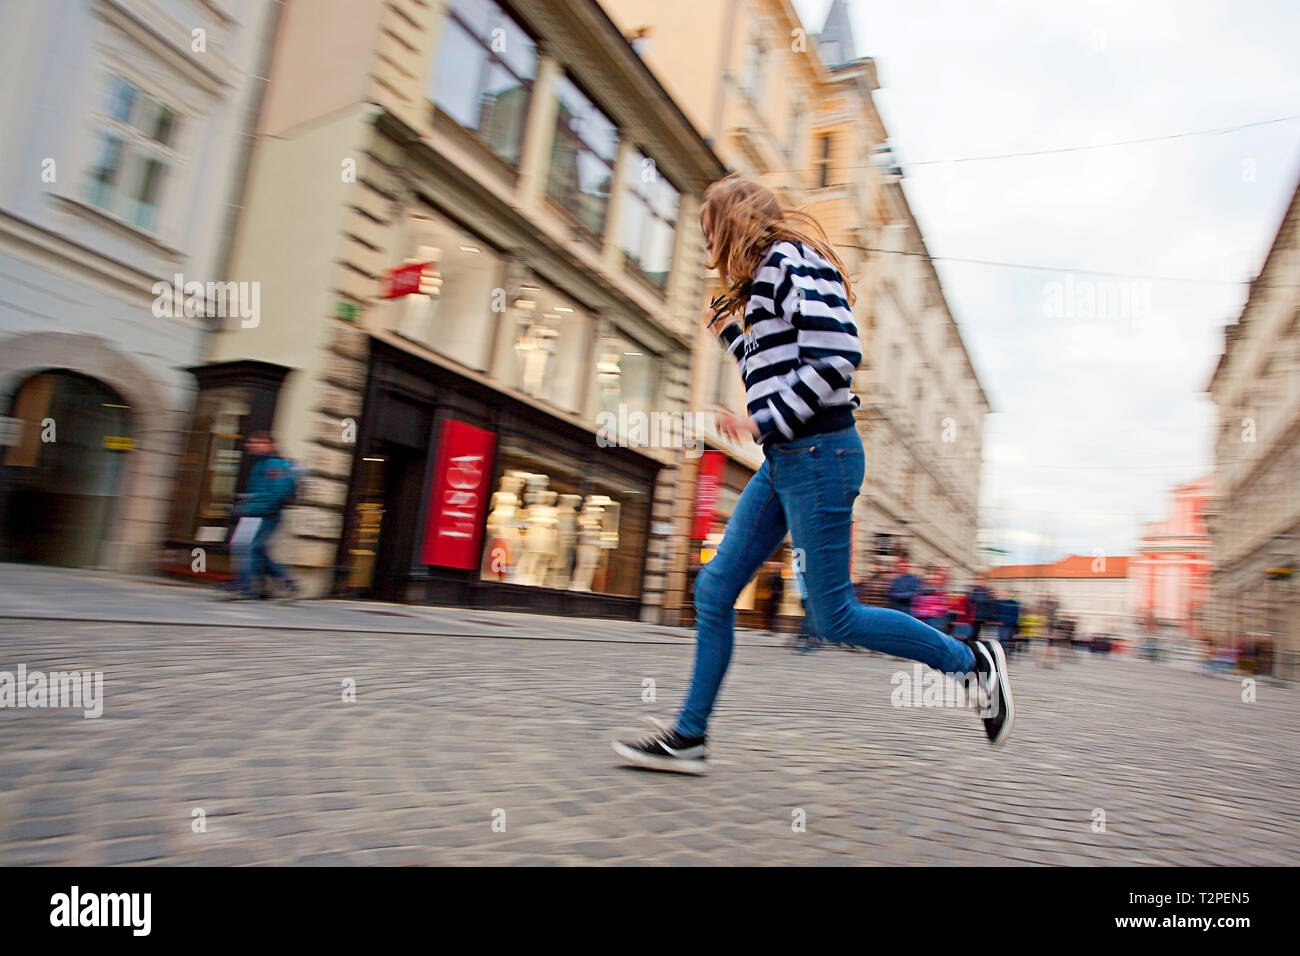 Fille courir dans la rue, Ljubljana, Slovénie Banque D'Images